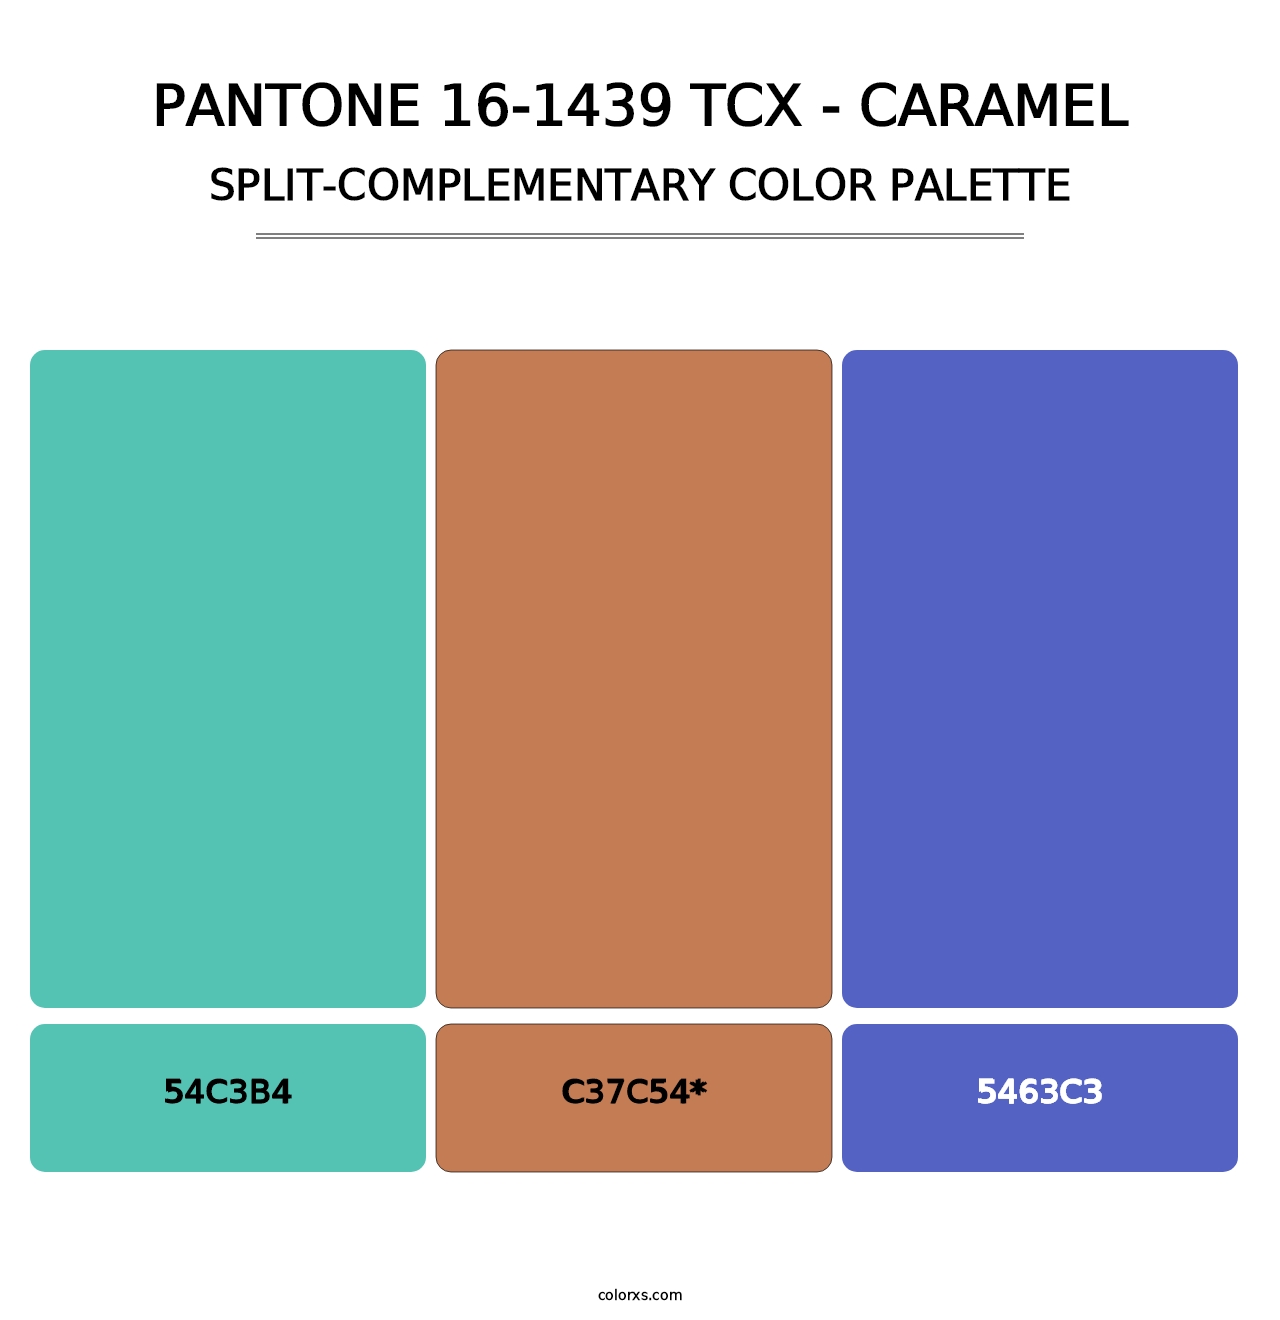 PANTONE 16-1439 TCX - Caramel - Split-Complementary Color Palette